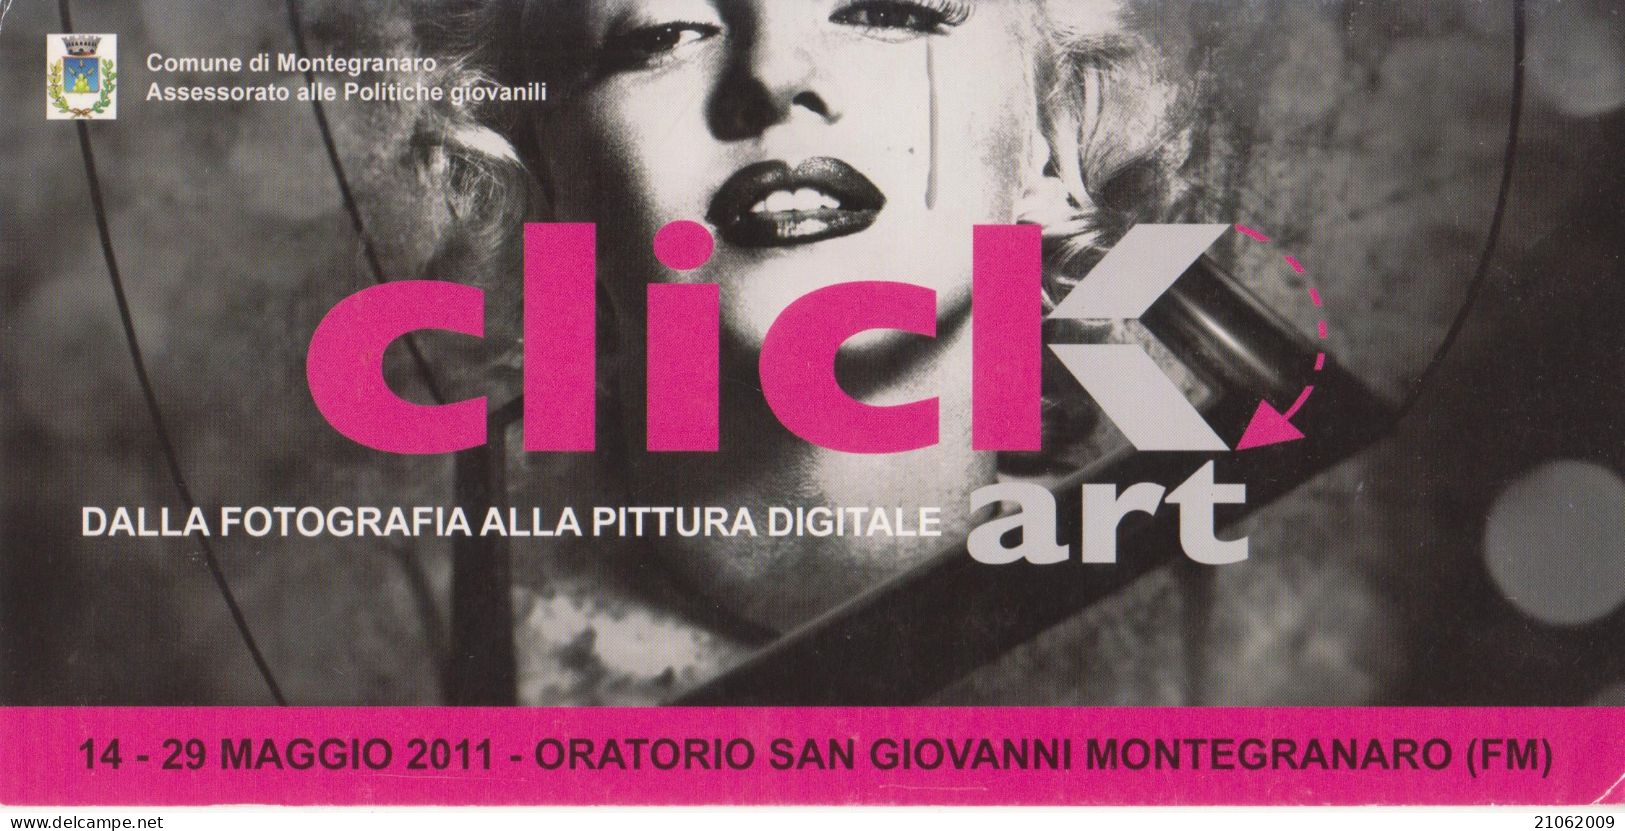 MONTEGRANARO - MOSTRA "CLICK-ART, DALLA FOTOGRAFIA ALLA PITTURA DIGITALE", MAGGIO 2011 - NV - Manifestazioni